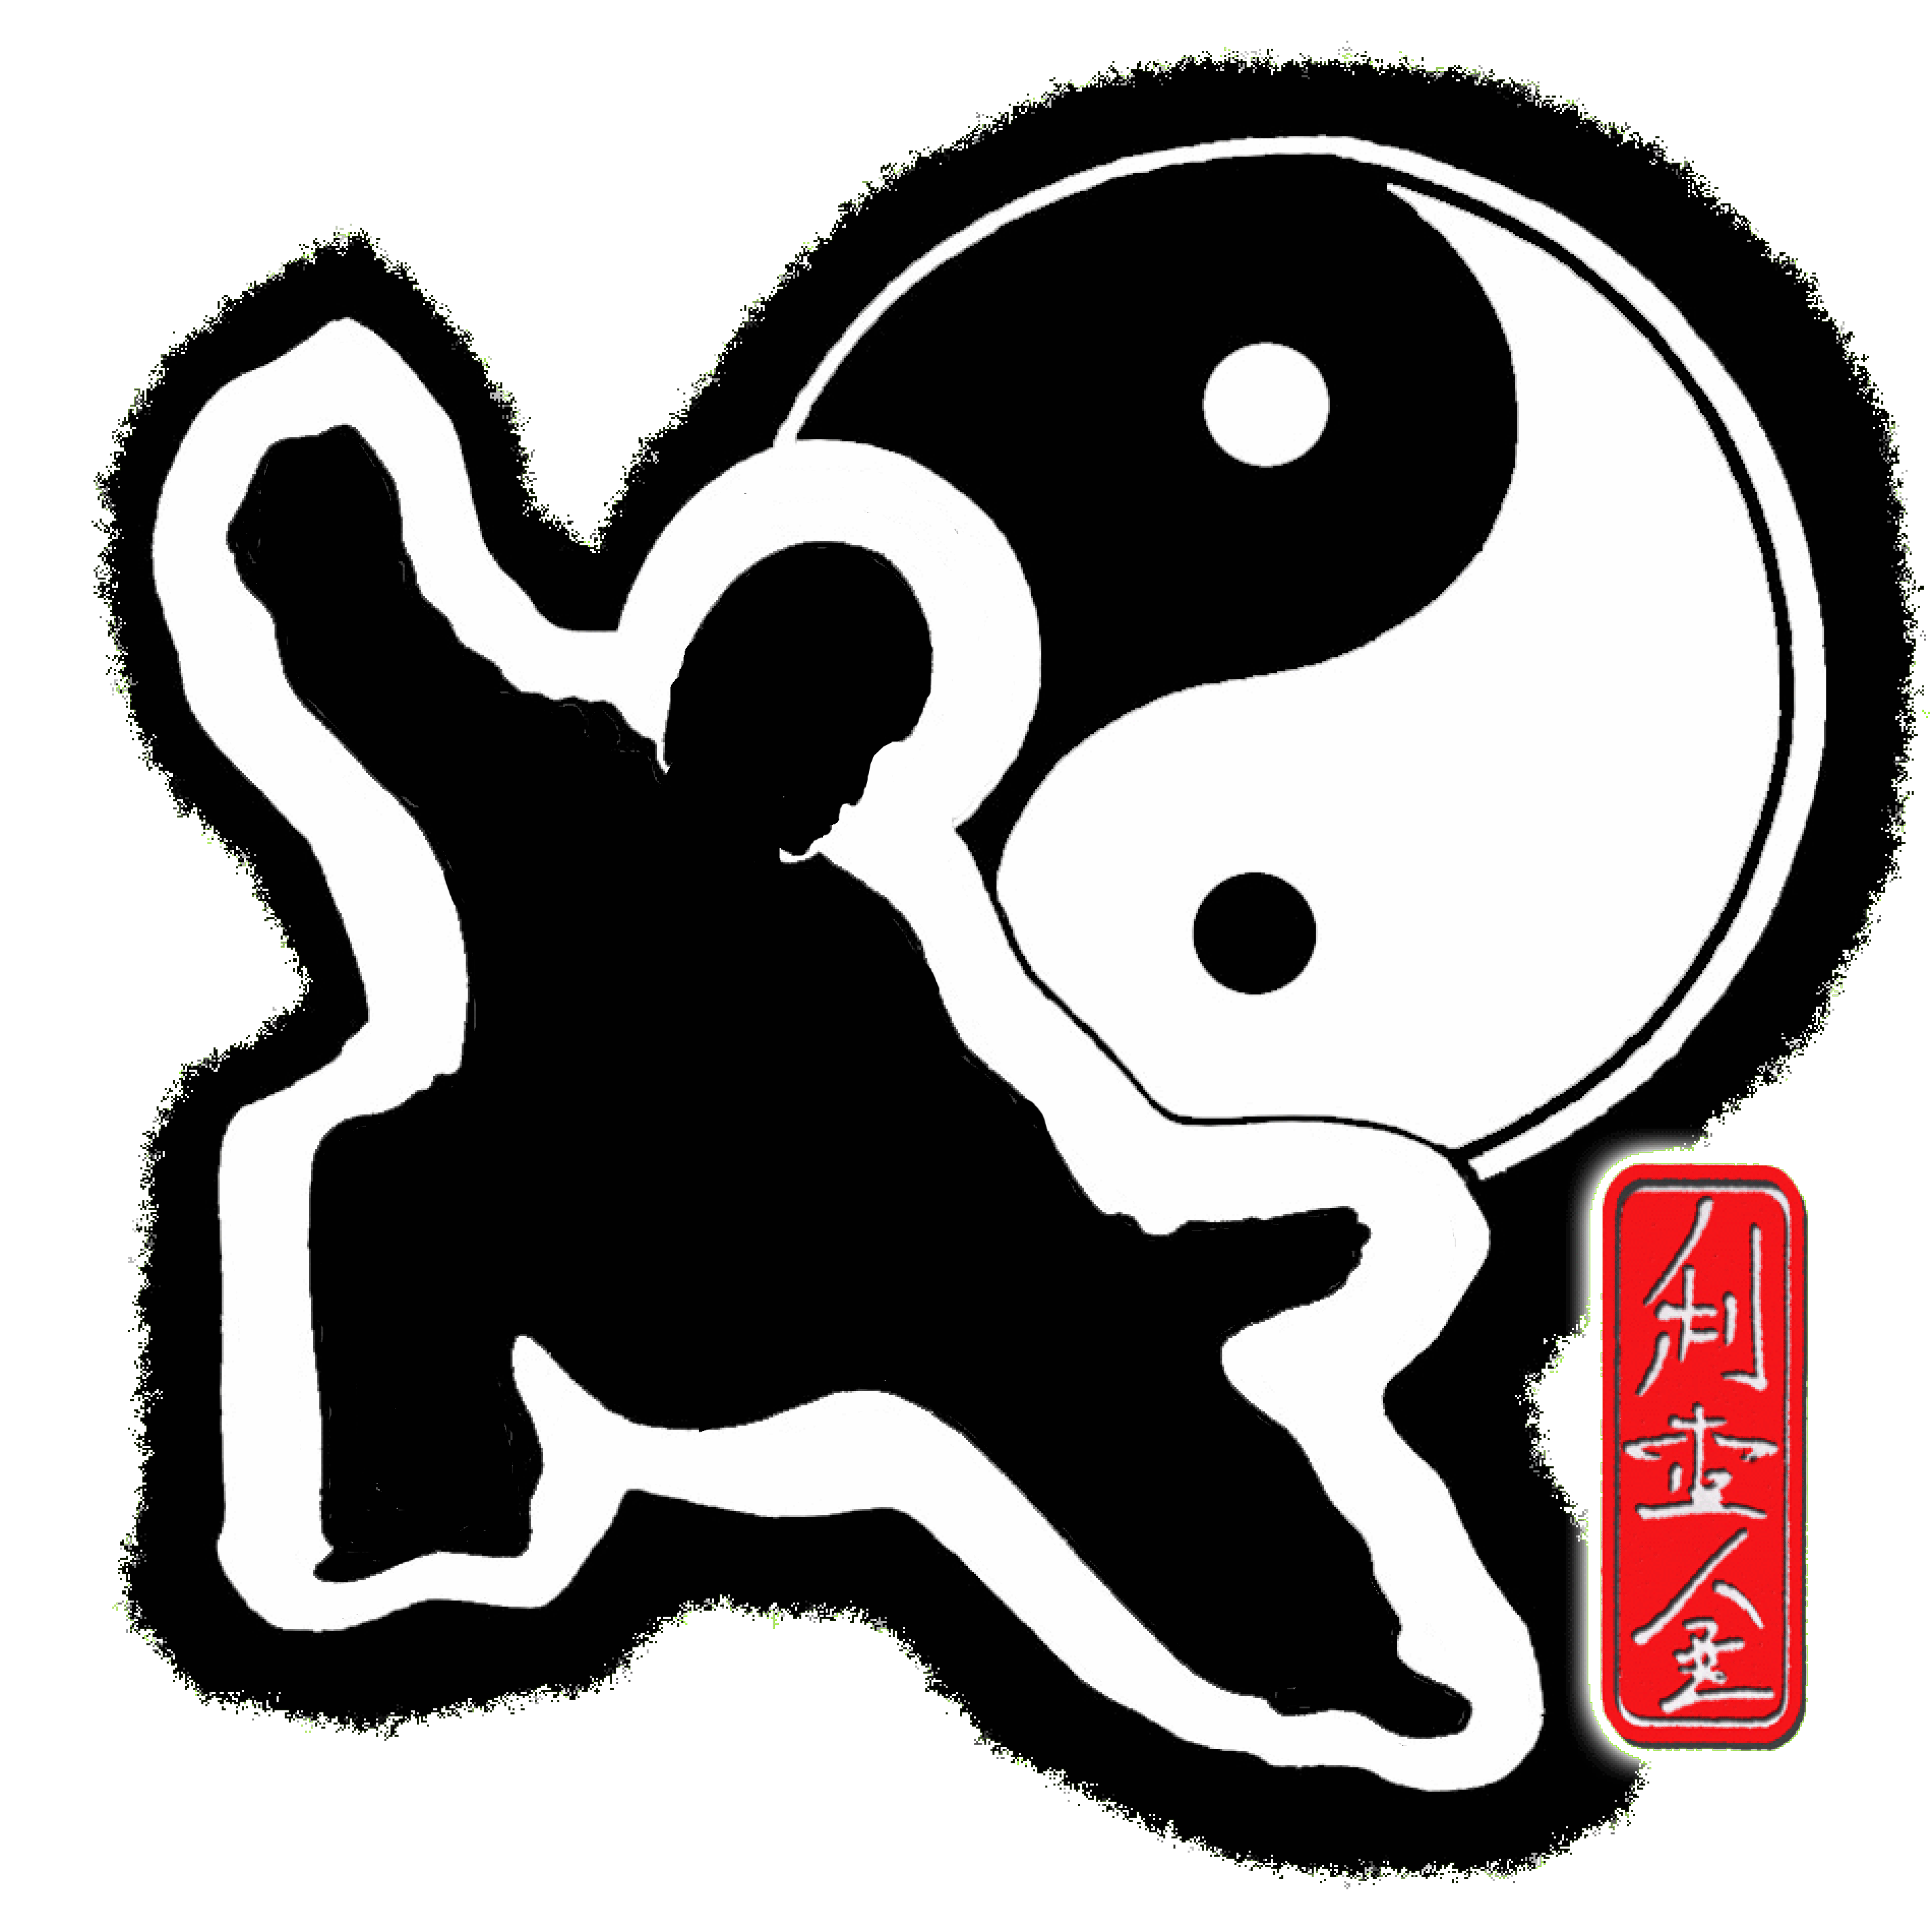 Mieir Kings tai chi and chi kung logo